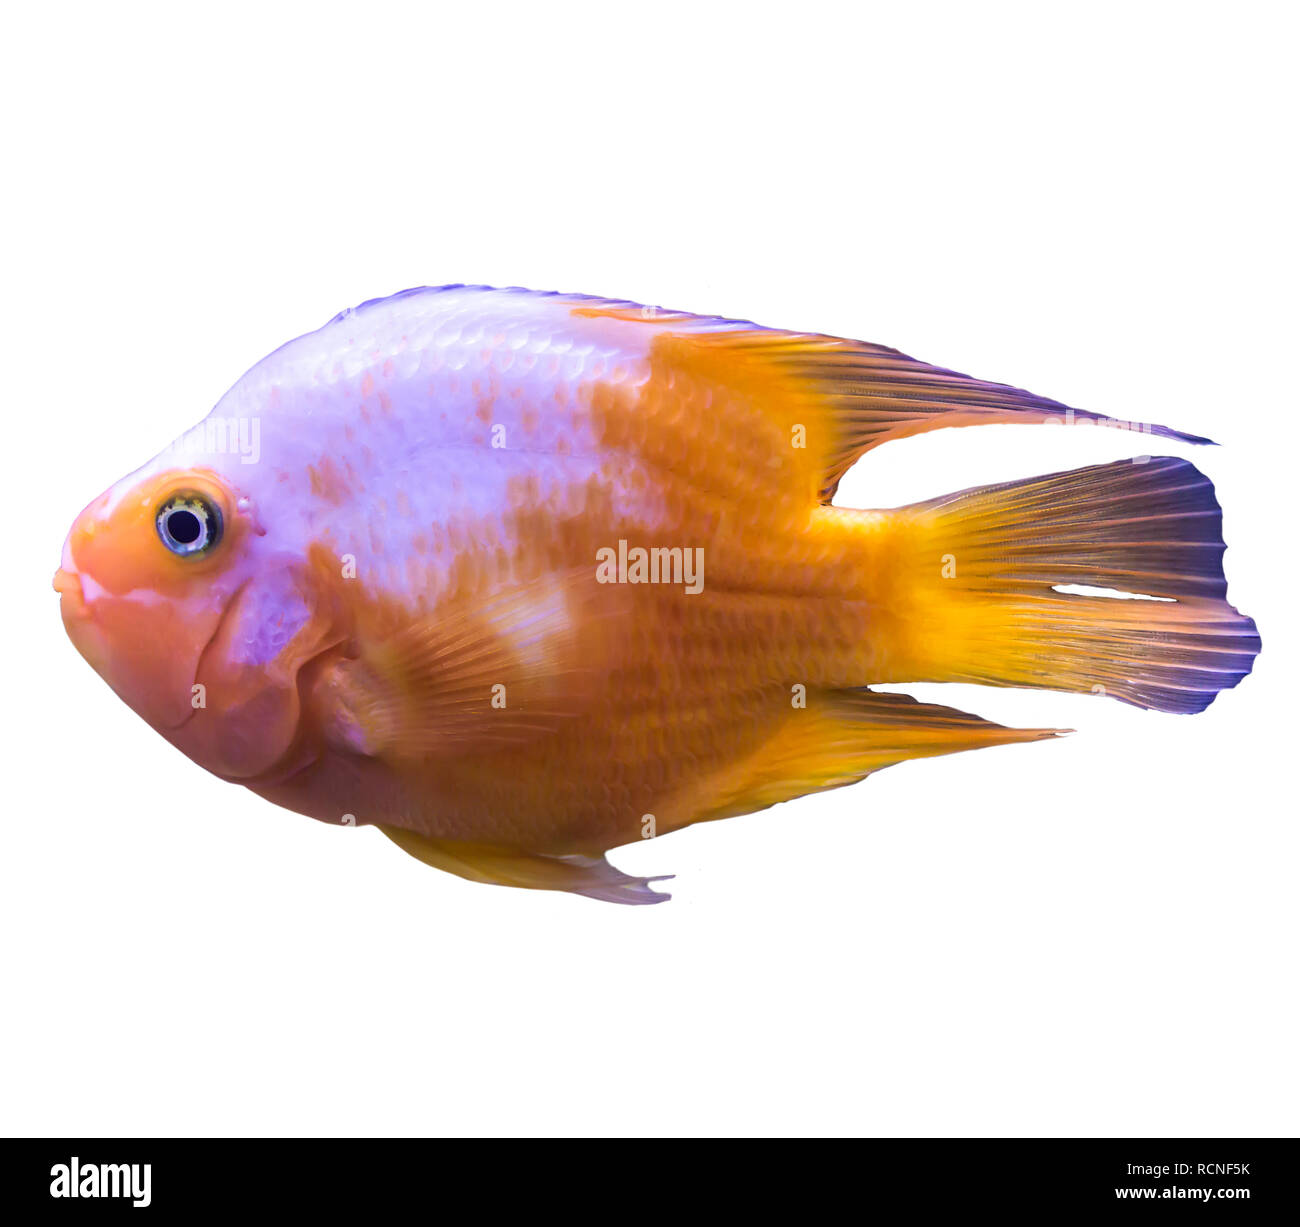 Orange Tropical Marine fish dall'Oceano Indiano. Foto isolato su sfondo bianco. Sito circa la natura ,pesci d'acquario, la vita nell'oceano . Foto Stock